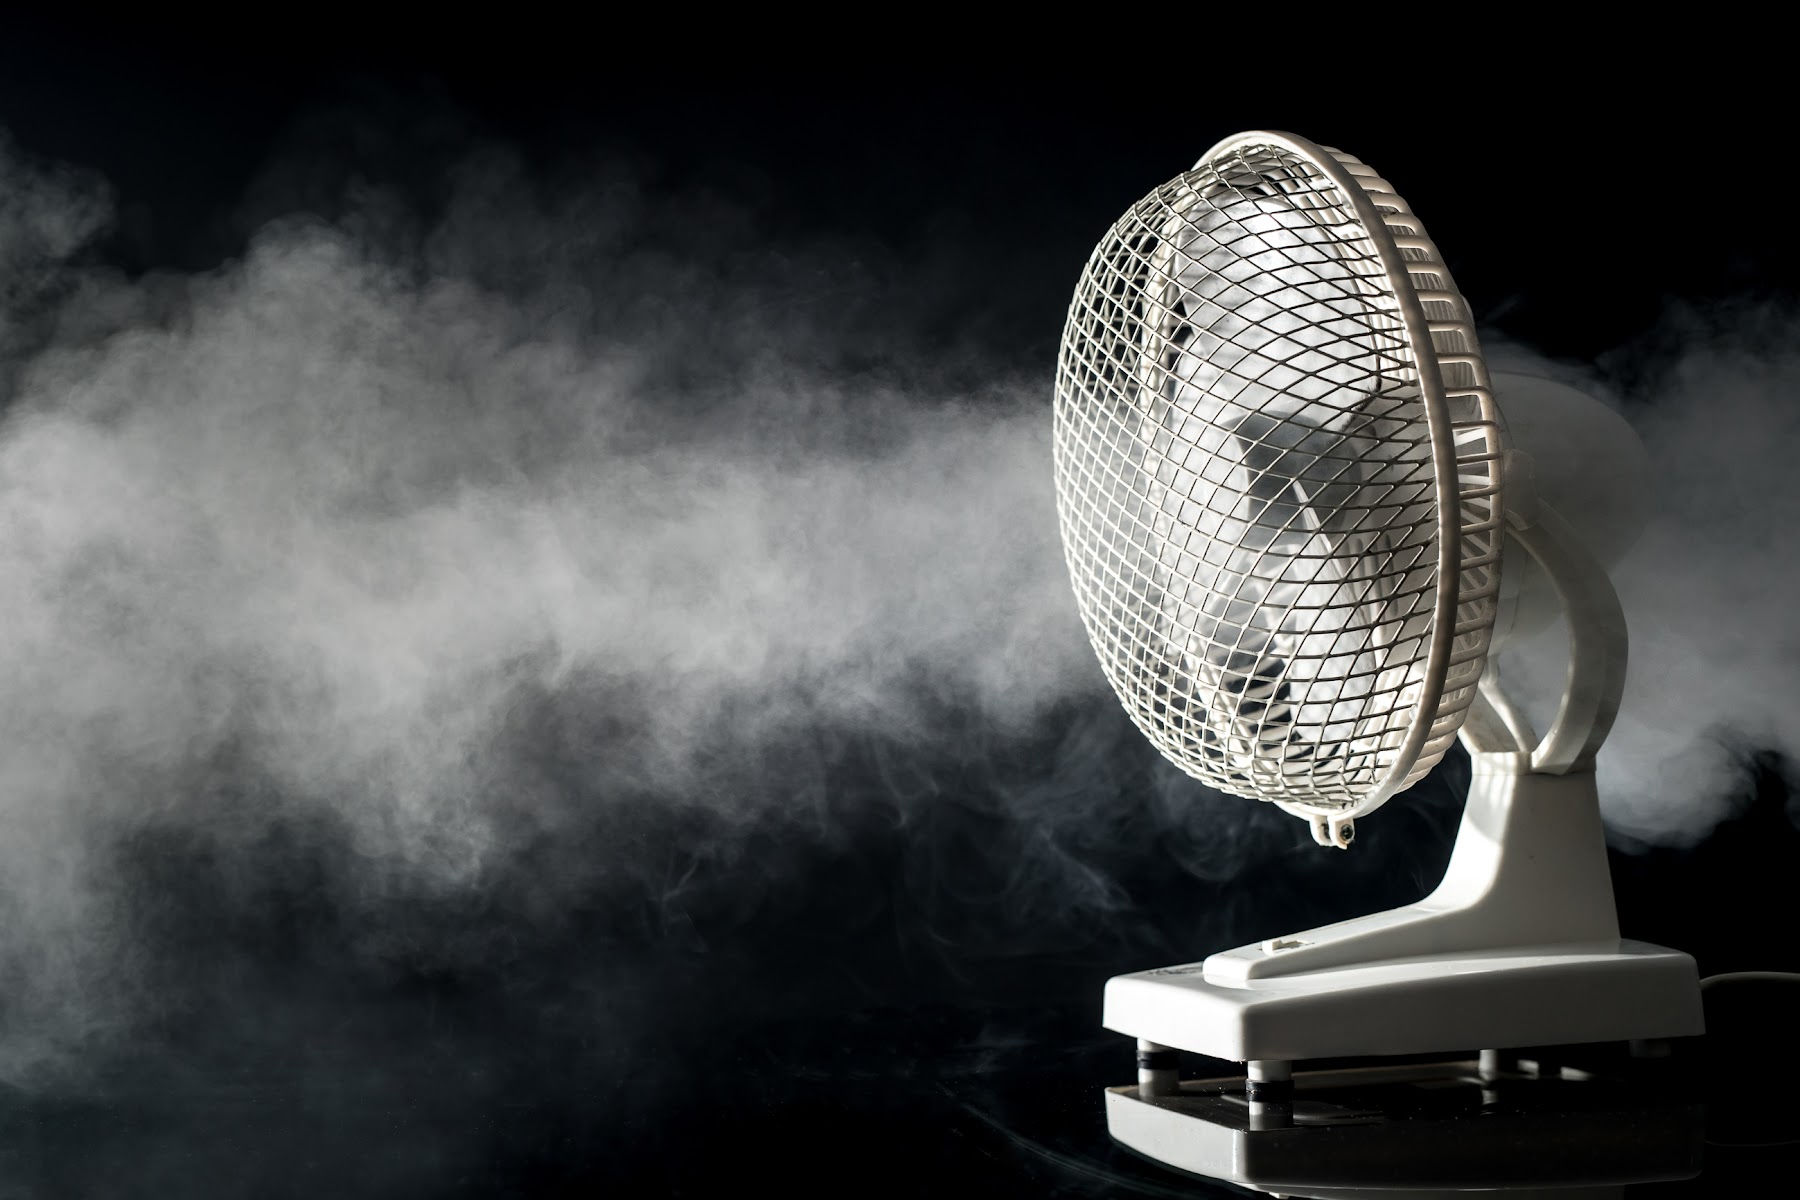 Fan blowing cool air